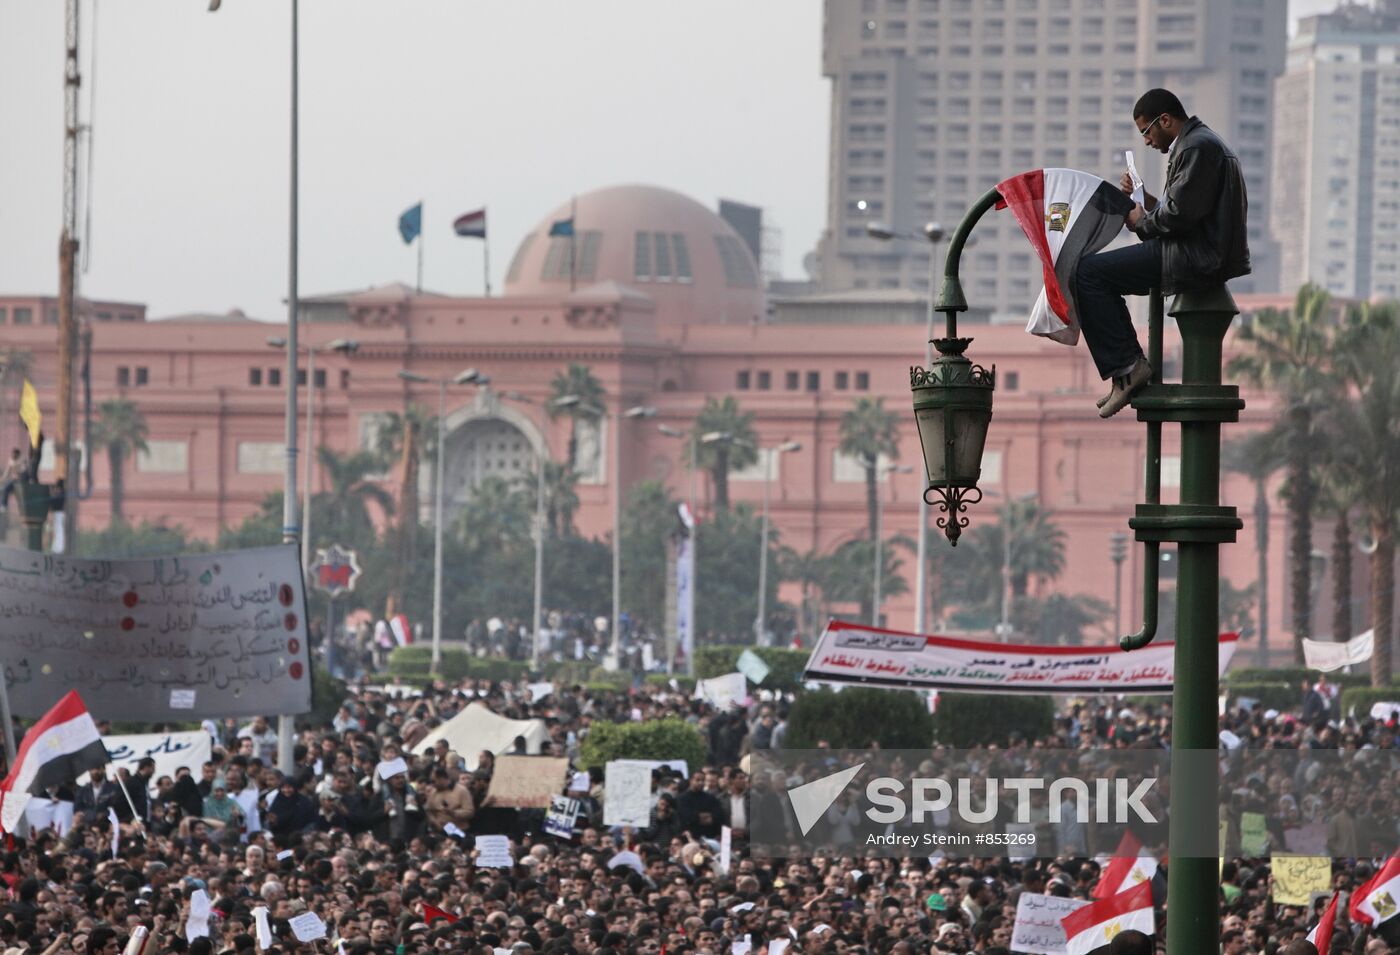 Protesters flood Egypt's capital